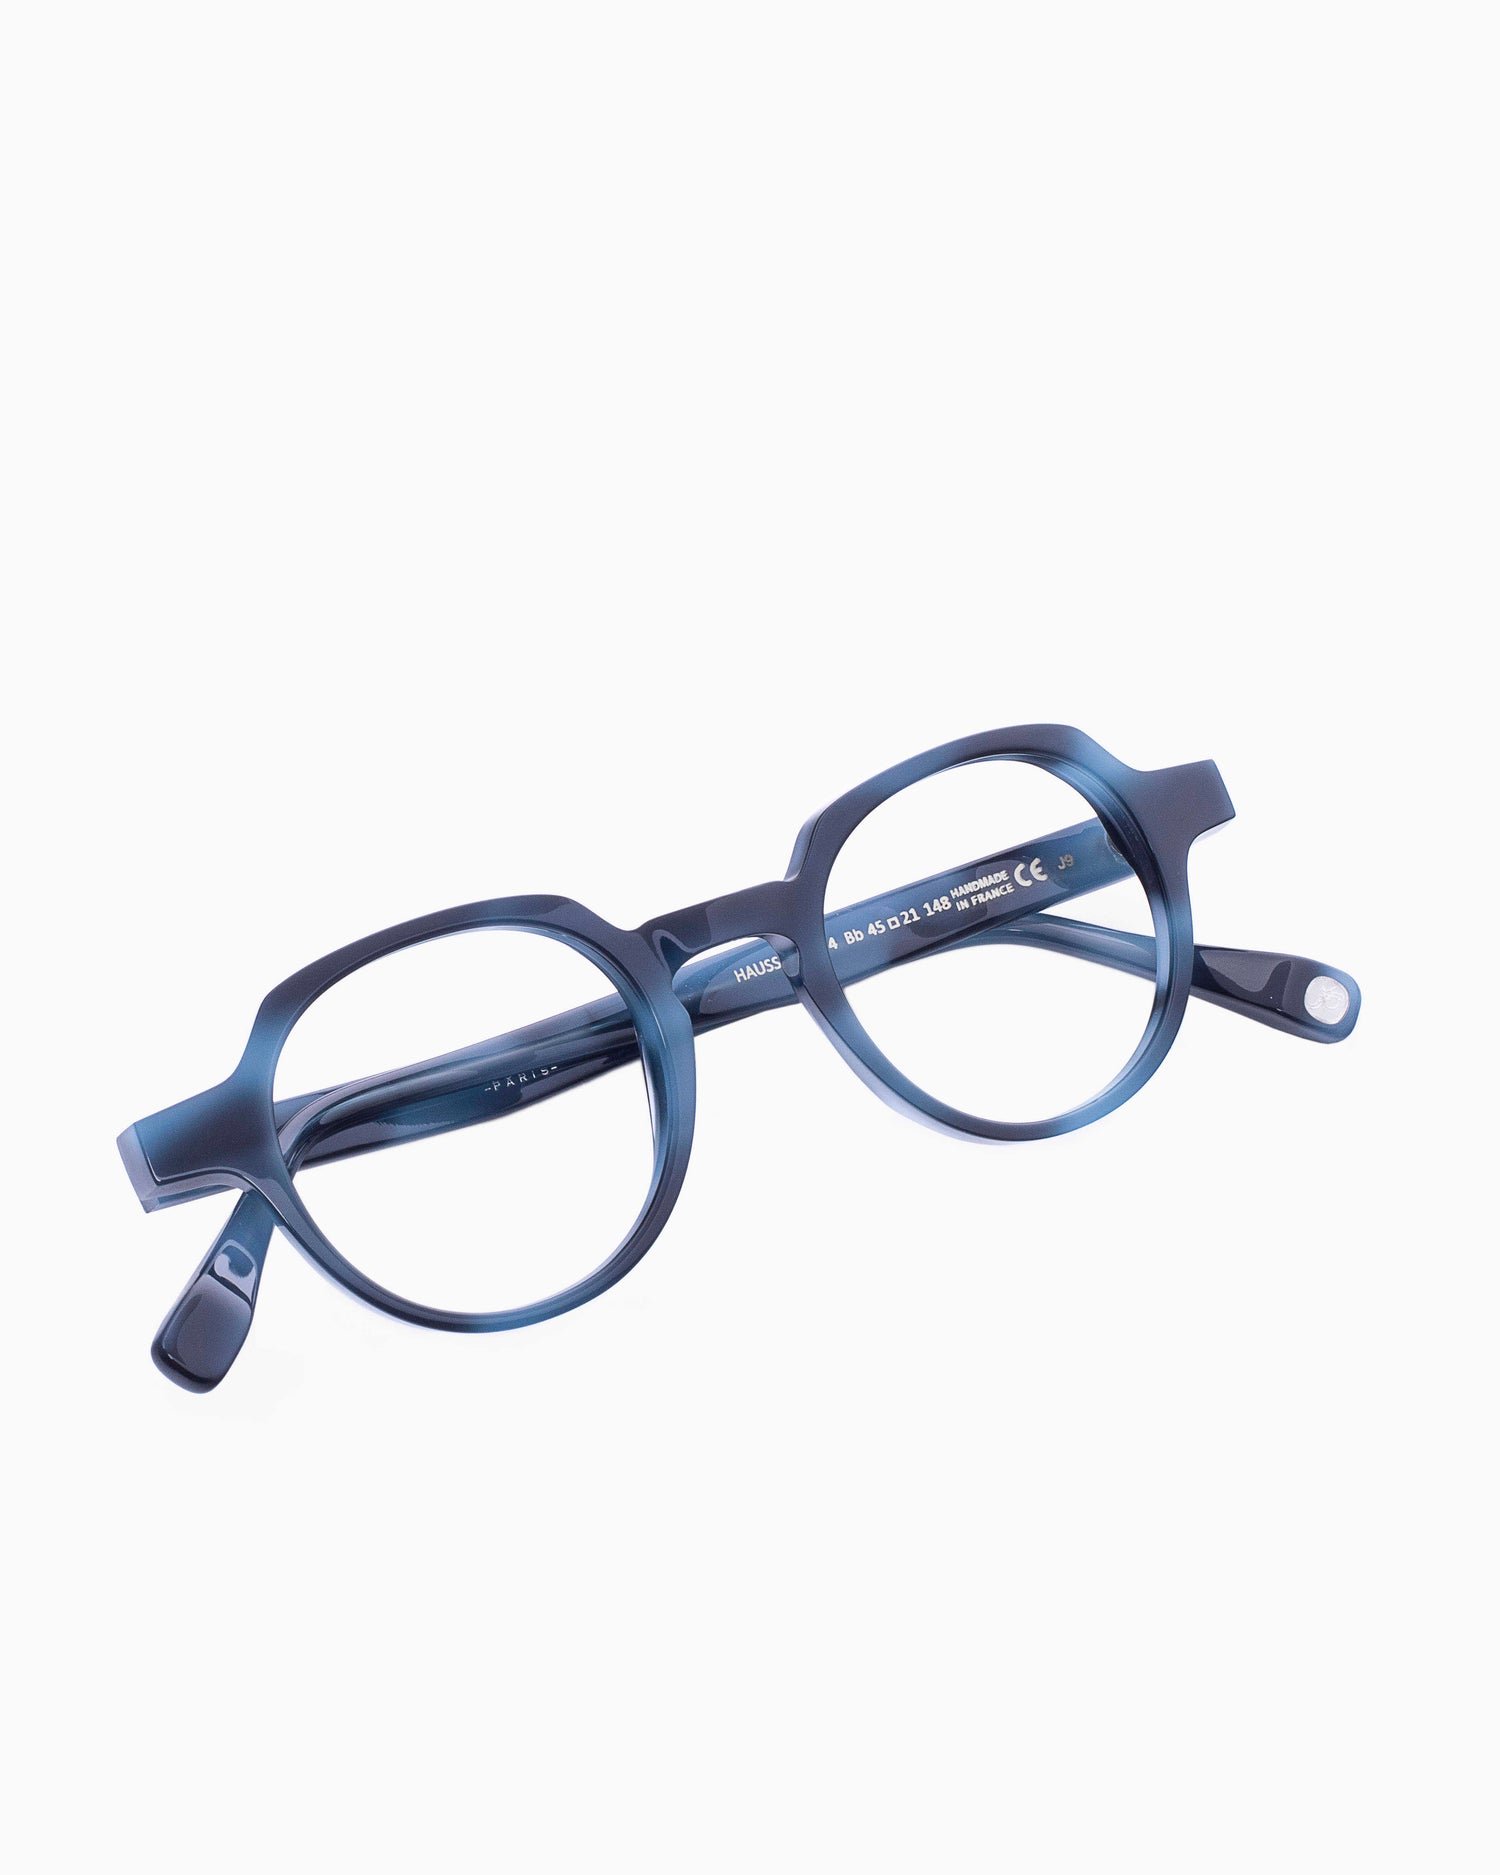 Francois Pinton - Haussmann4 - Bb | Bar à lunettes:  Marie-Sophie Dion